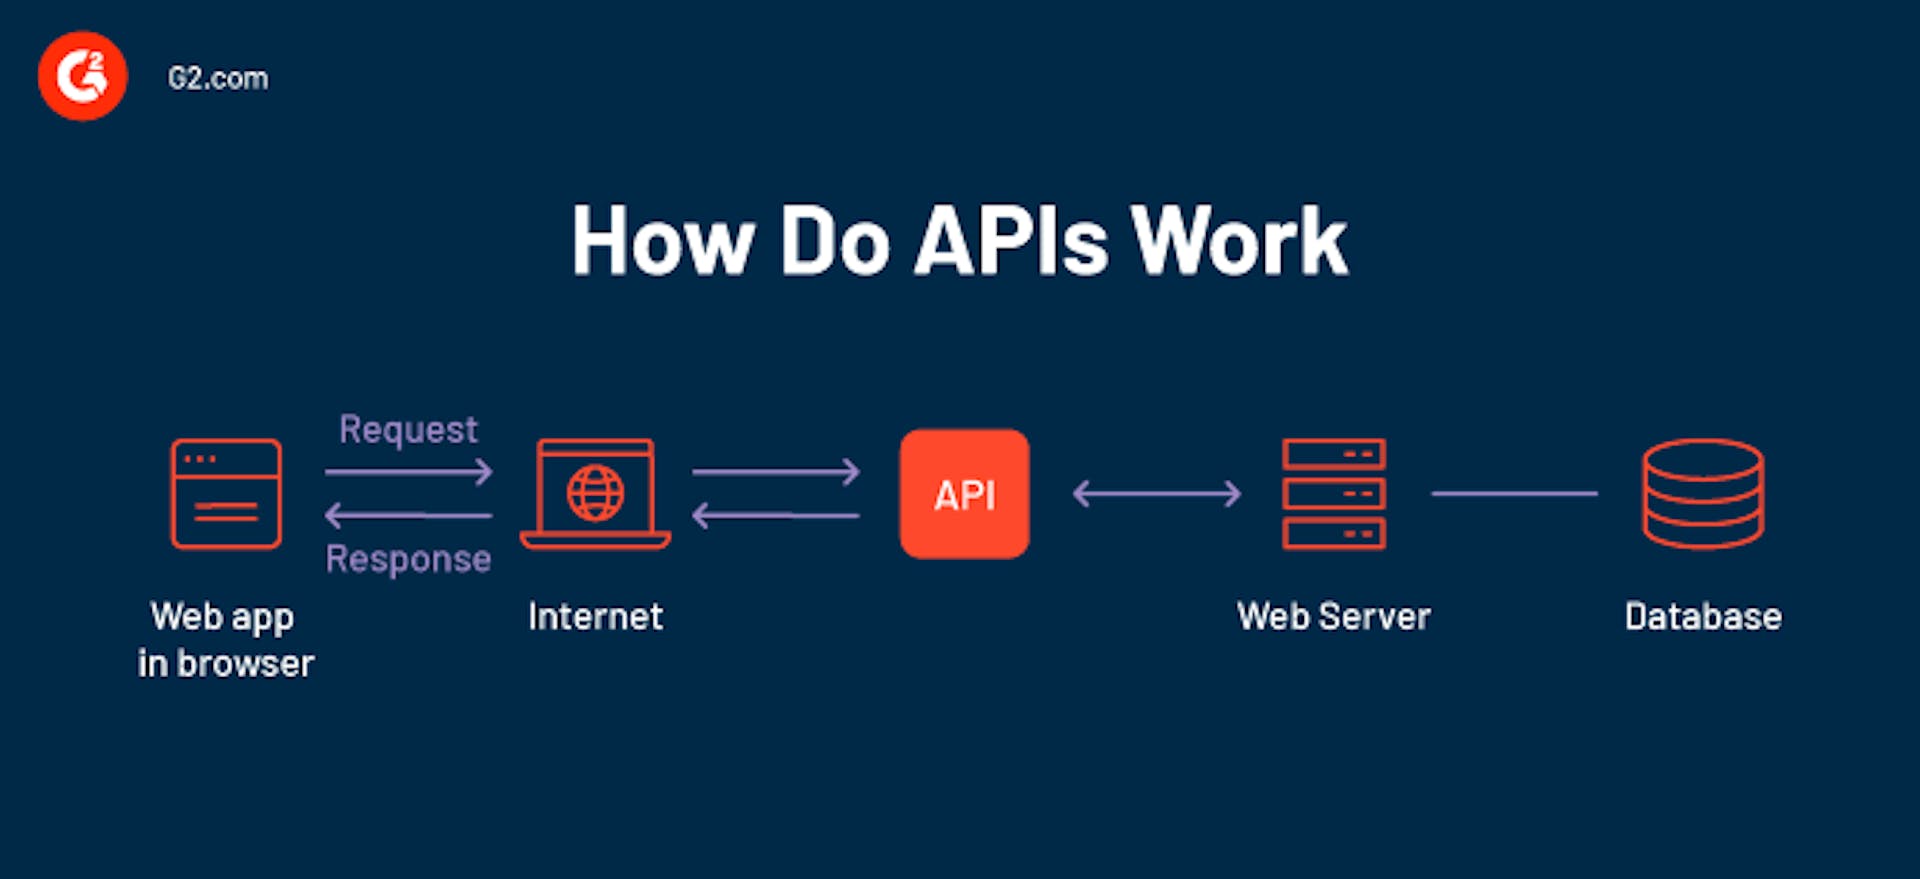 How APIs work by G2.com